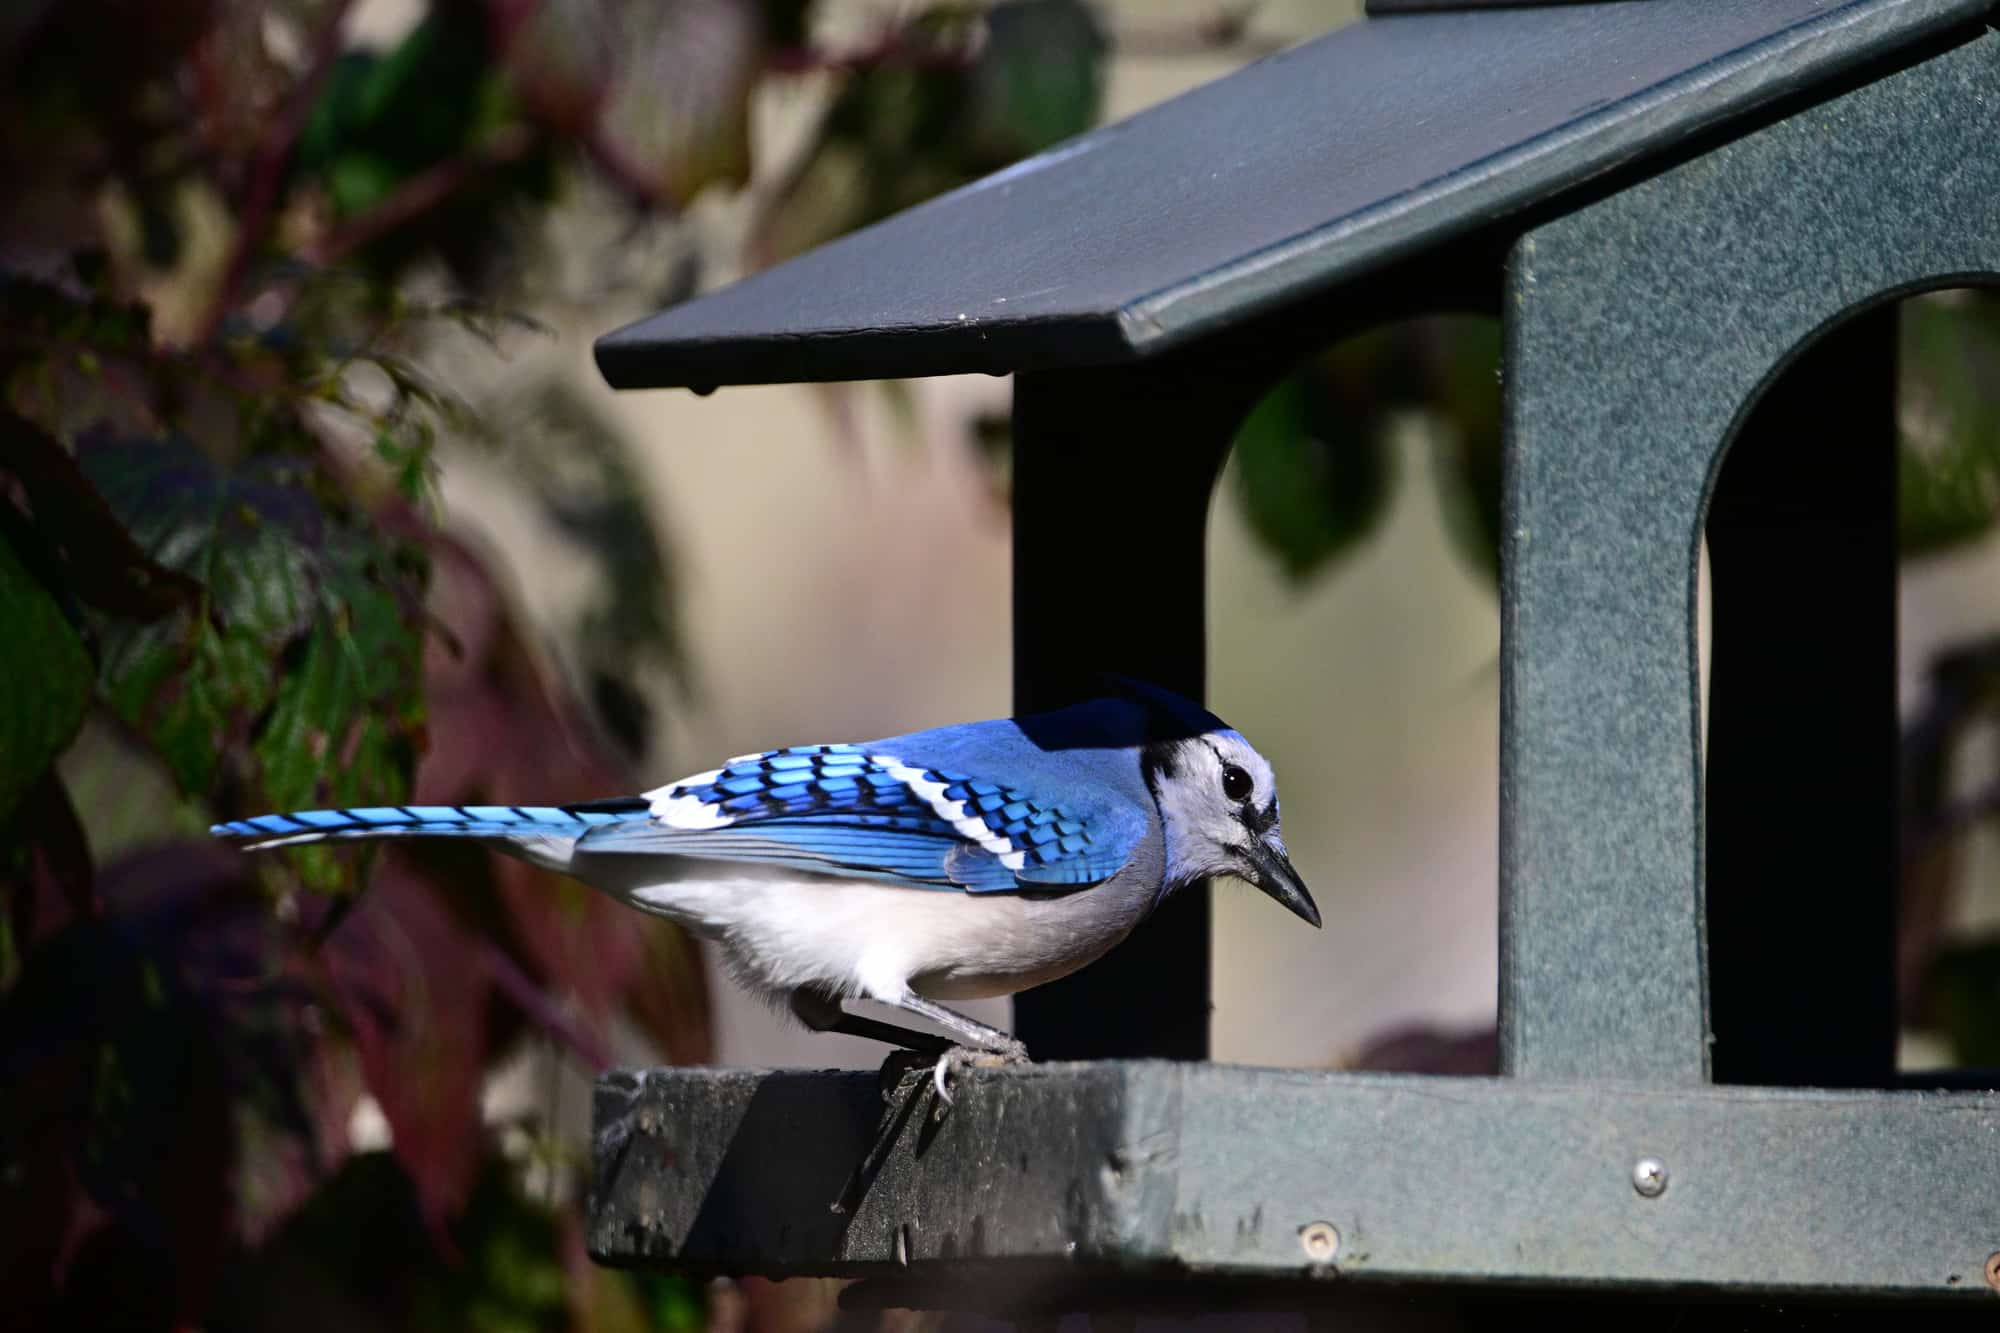 Close up of a Blue jay bird at a bird feeder